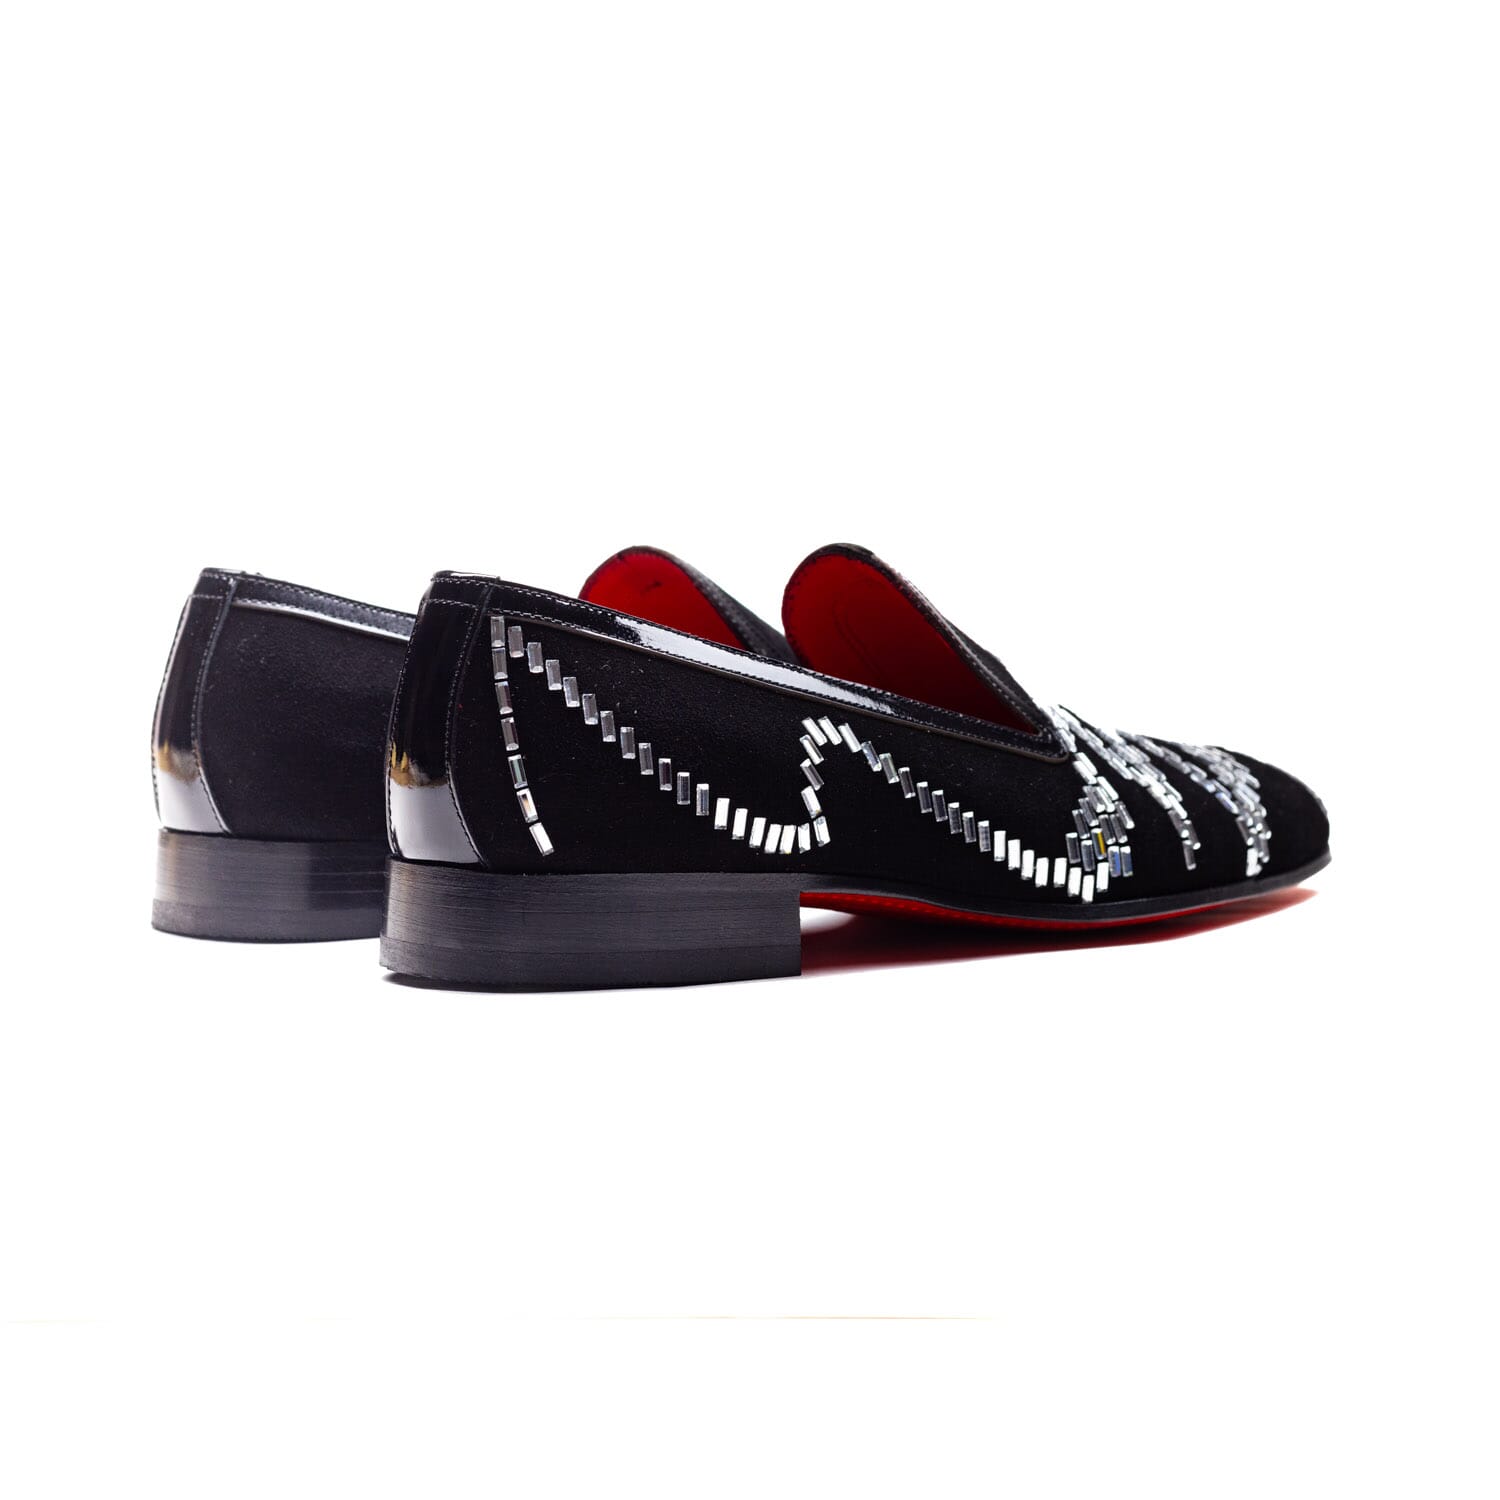 Elitto – 1806 – Black – Perocili Shoes